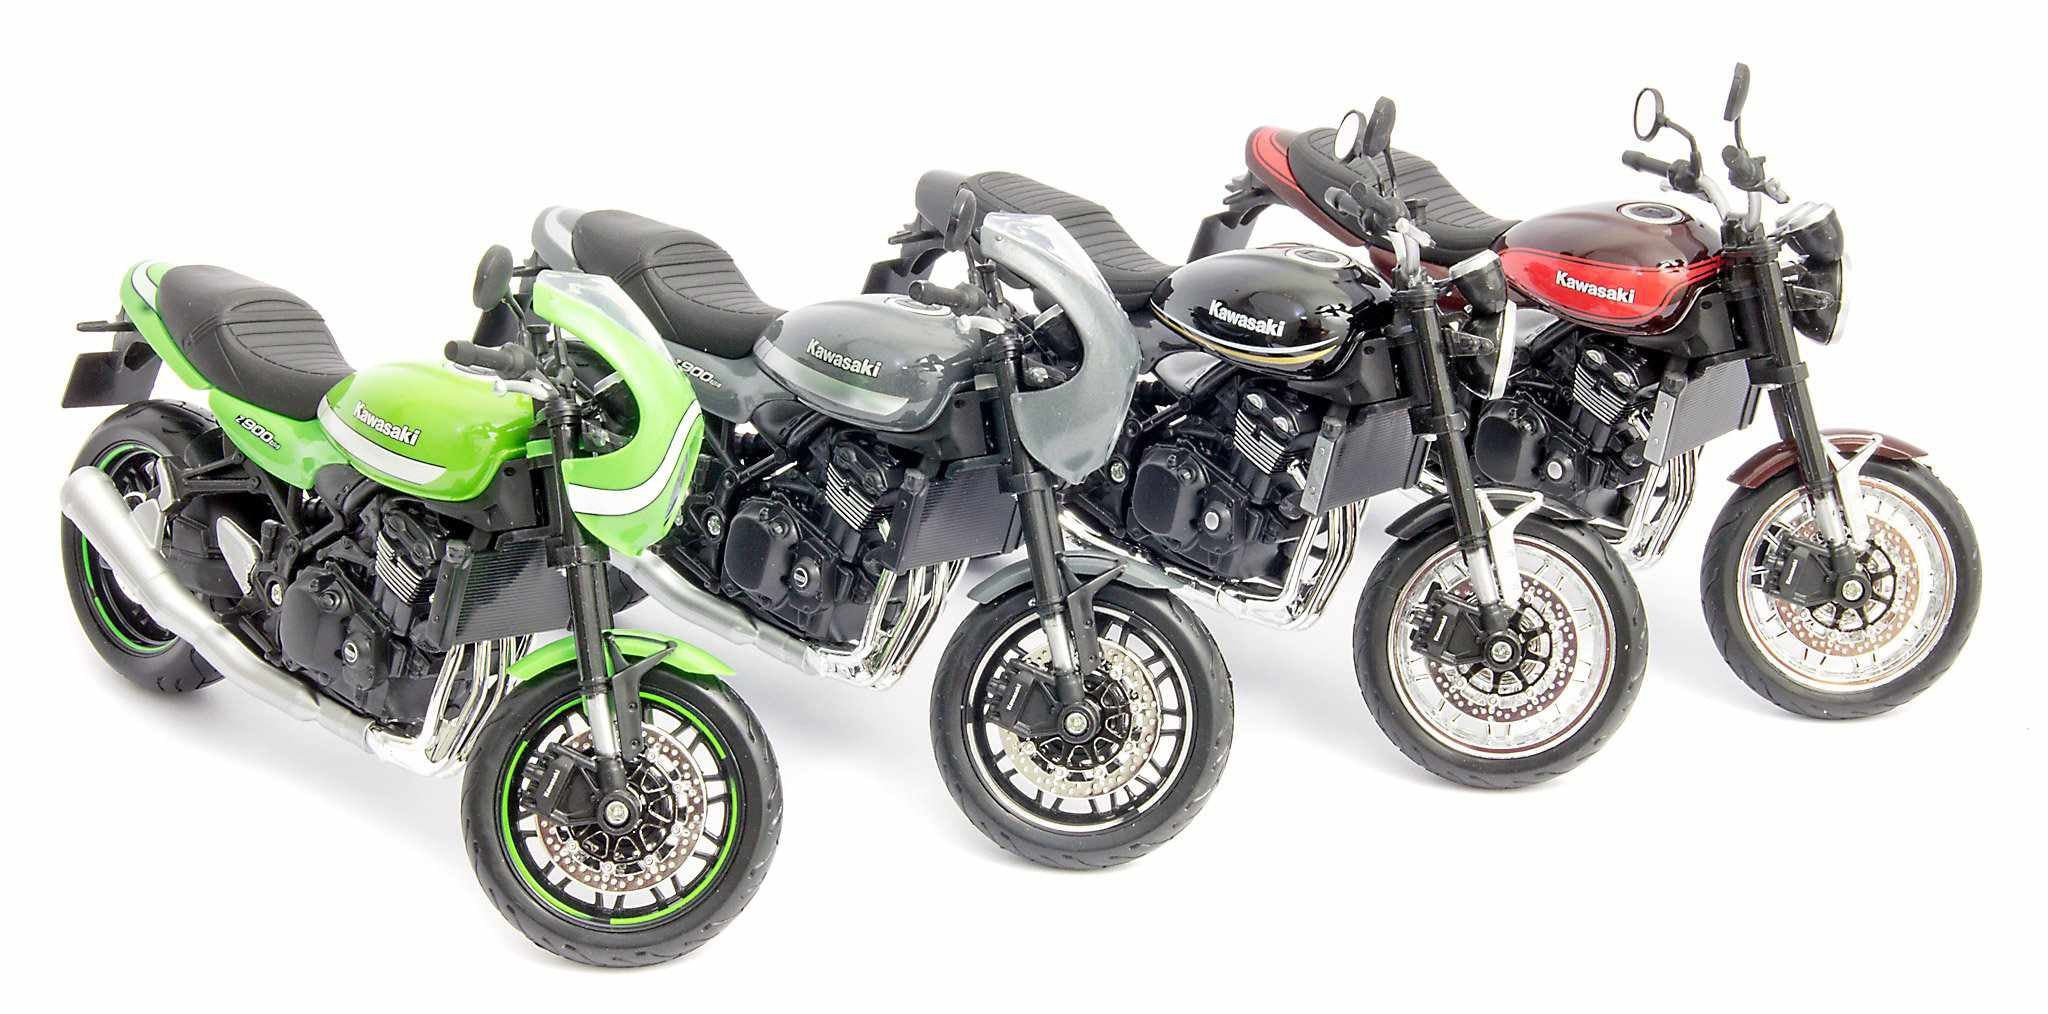 Cool retro Kawasaki models from Maisto